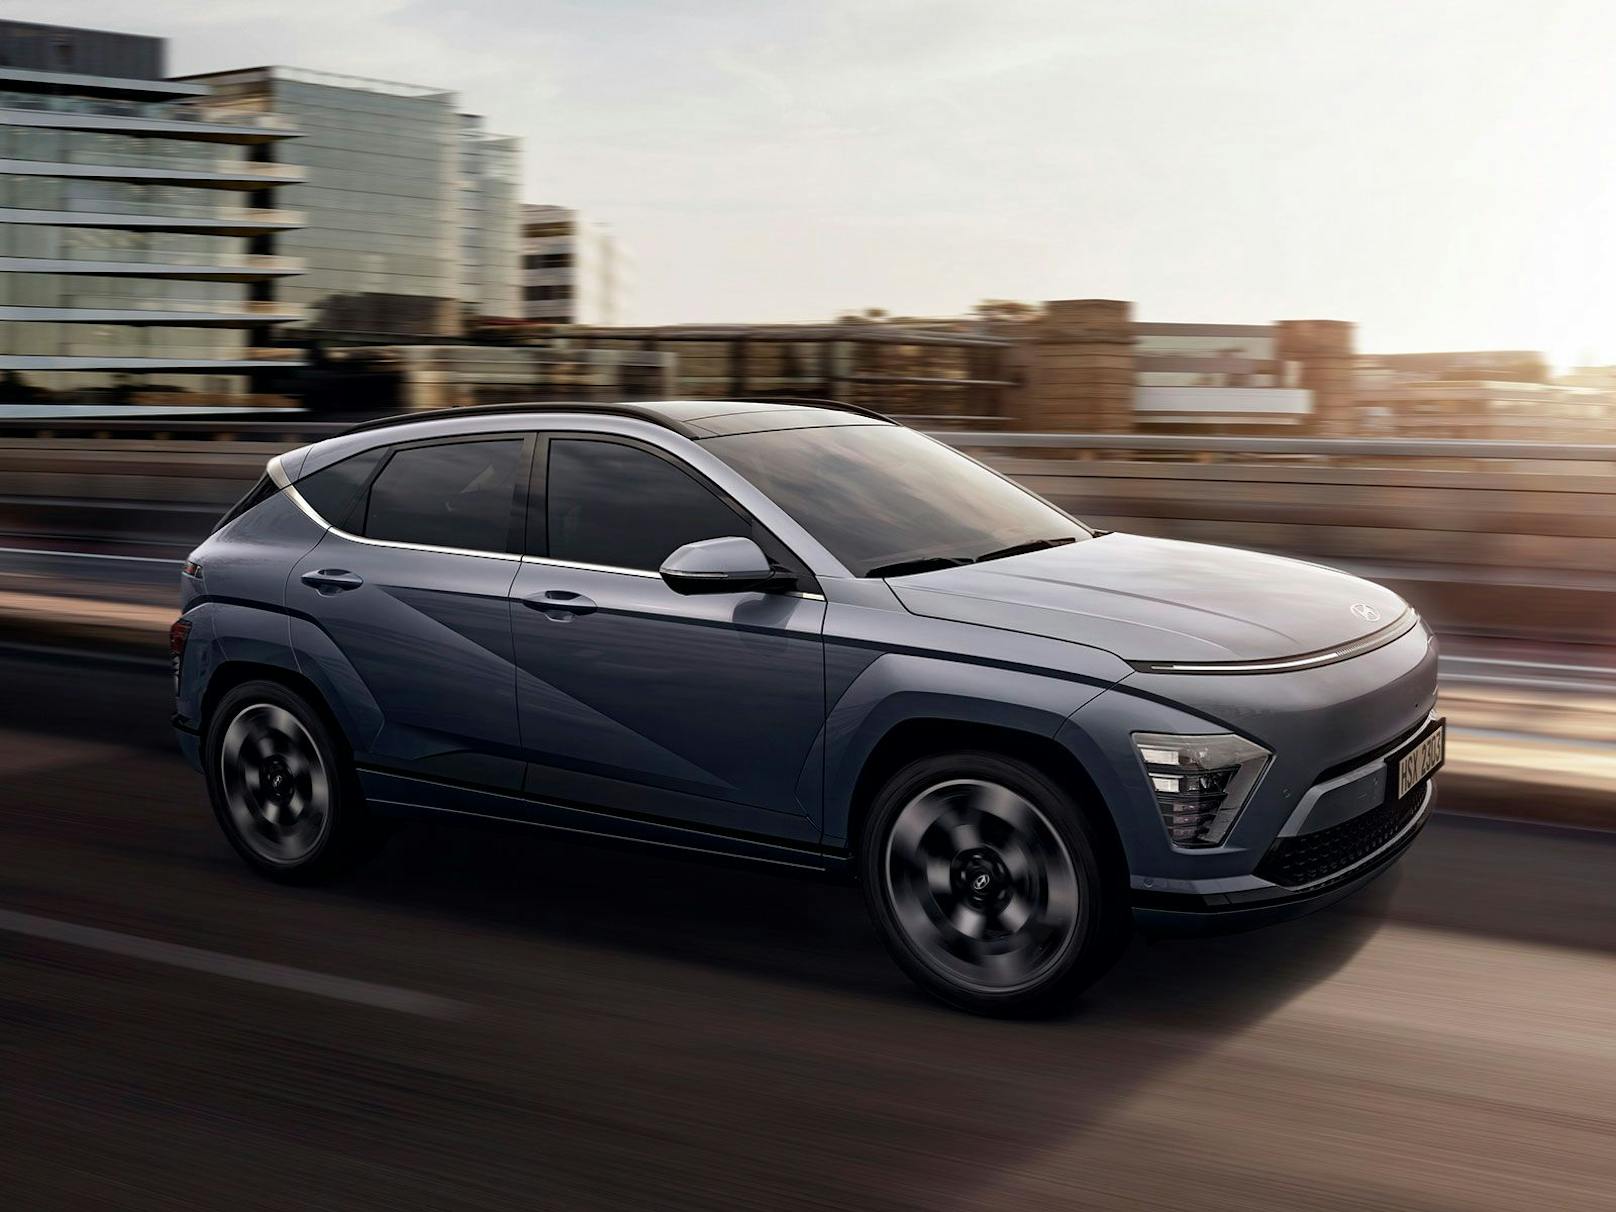 Der neue Hyundai Kona wirkt deutlich dynamischer und moderner.